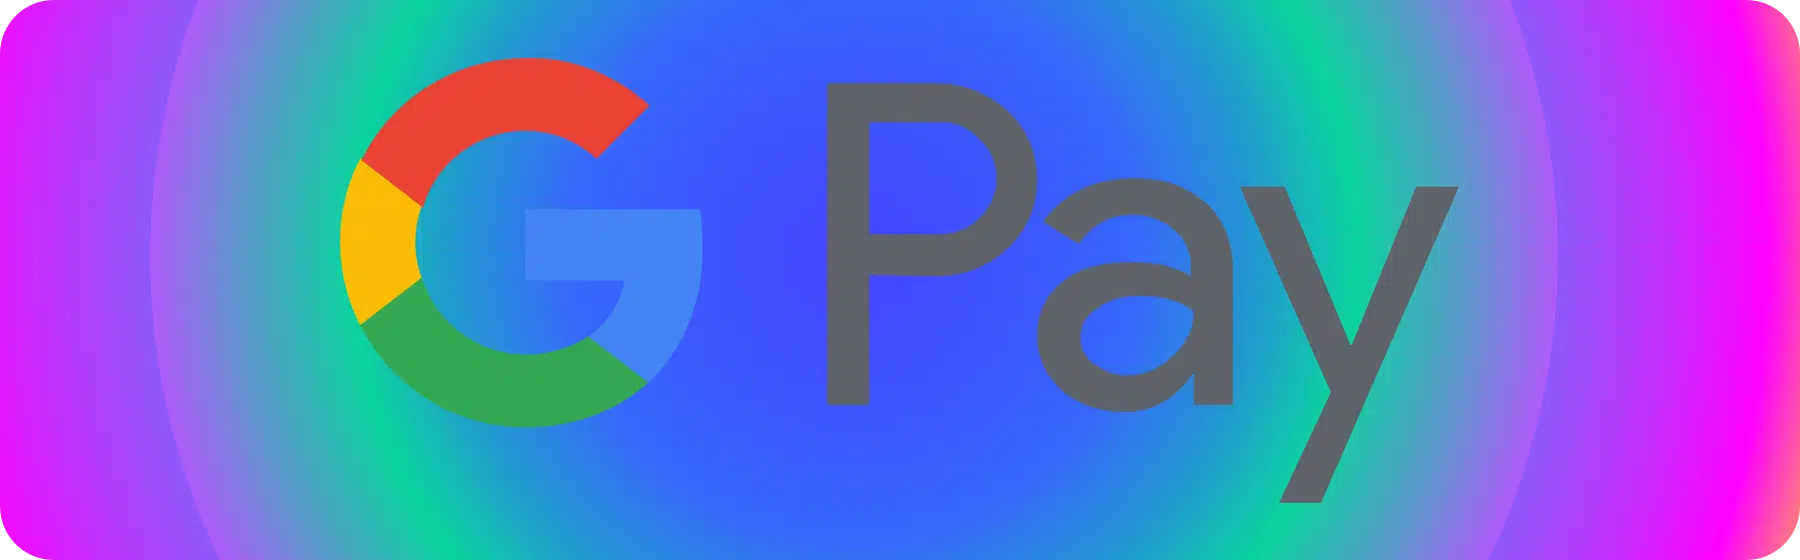 gpay logo as payment method